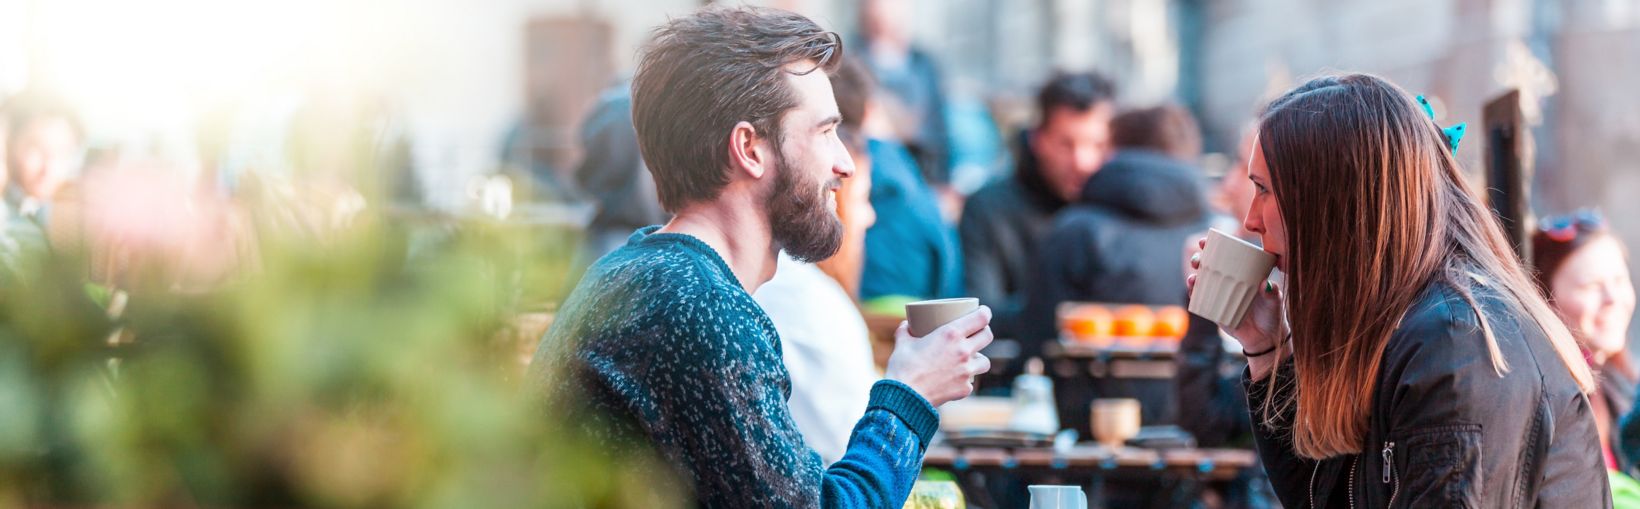 Ung kvinna med långt brunt hår och manlig vän dricker kaffe vid ett bord utanför ett kafé under en solig men ändå kylig dag